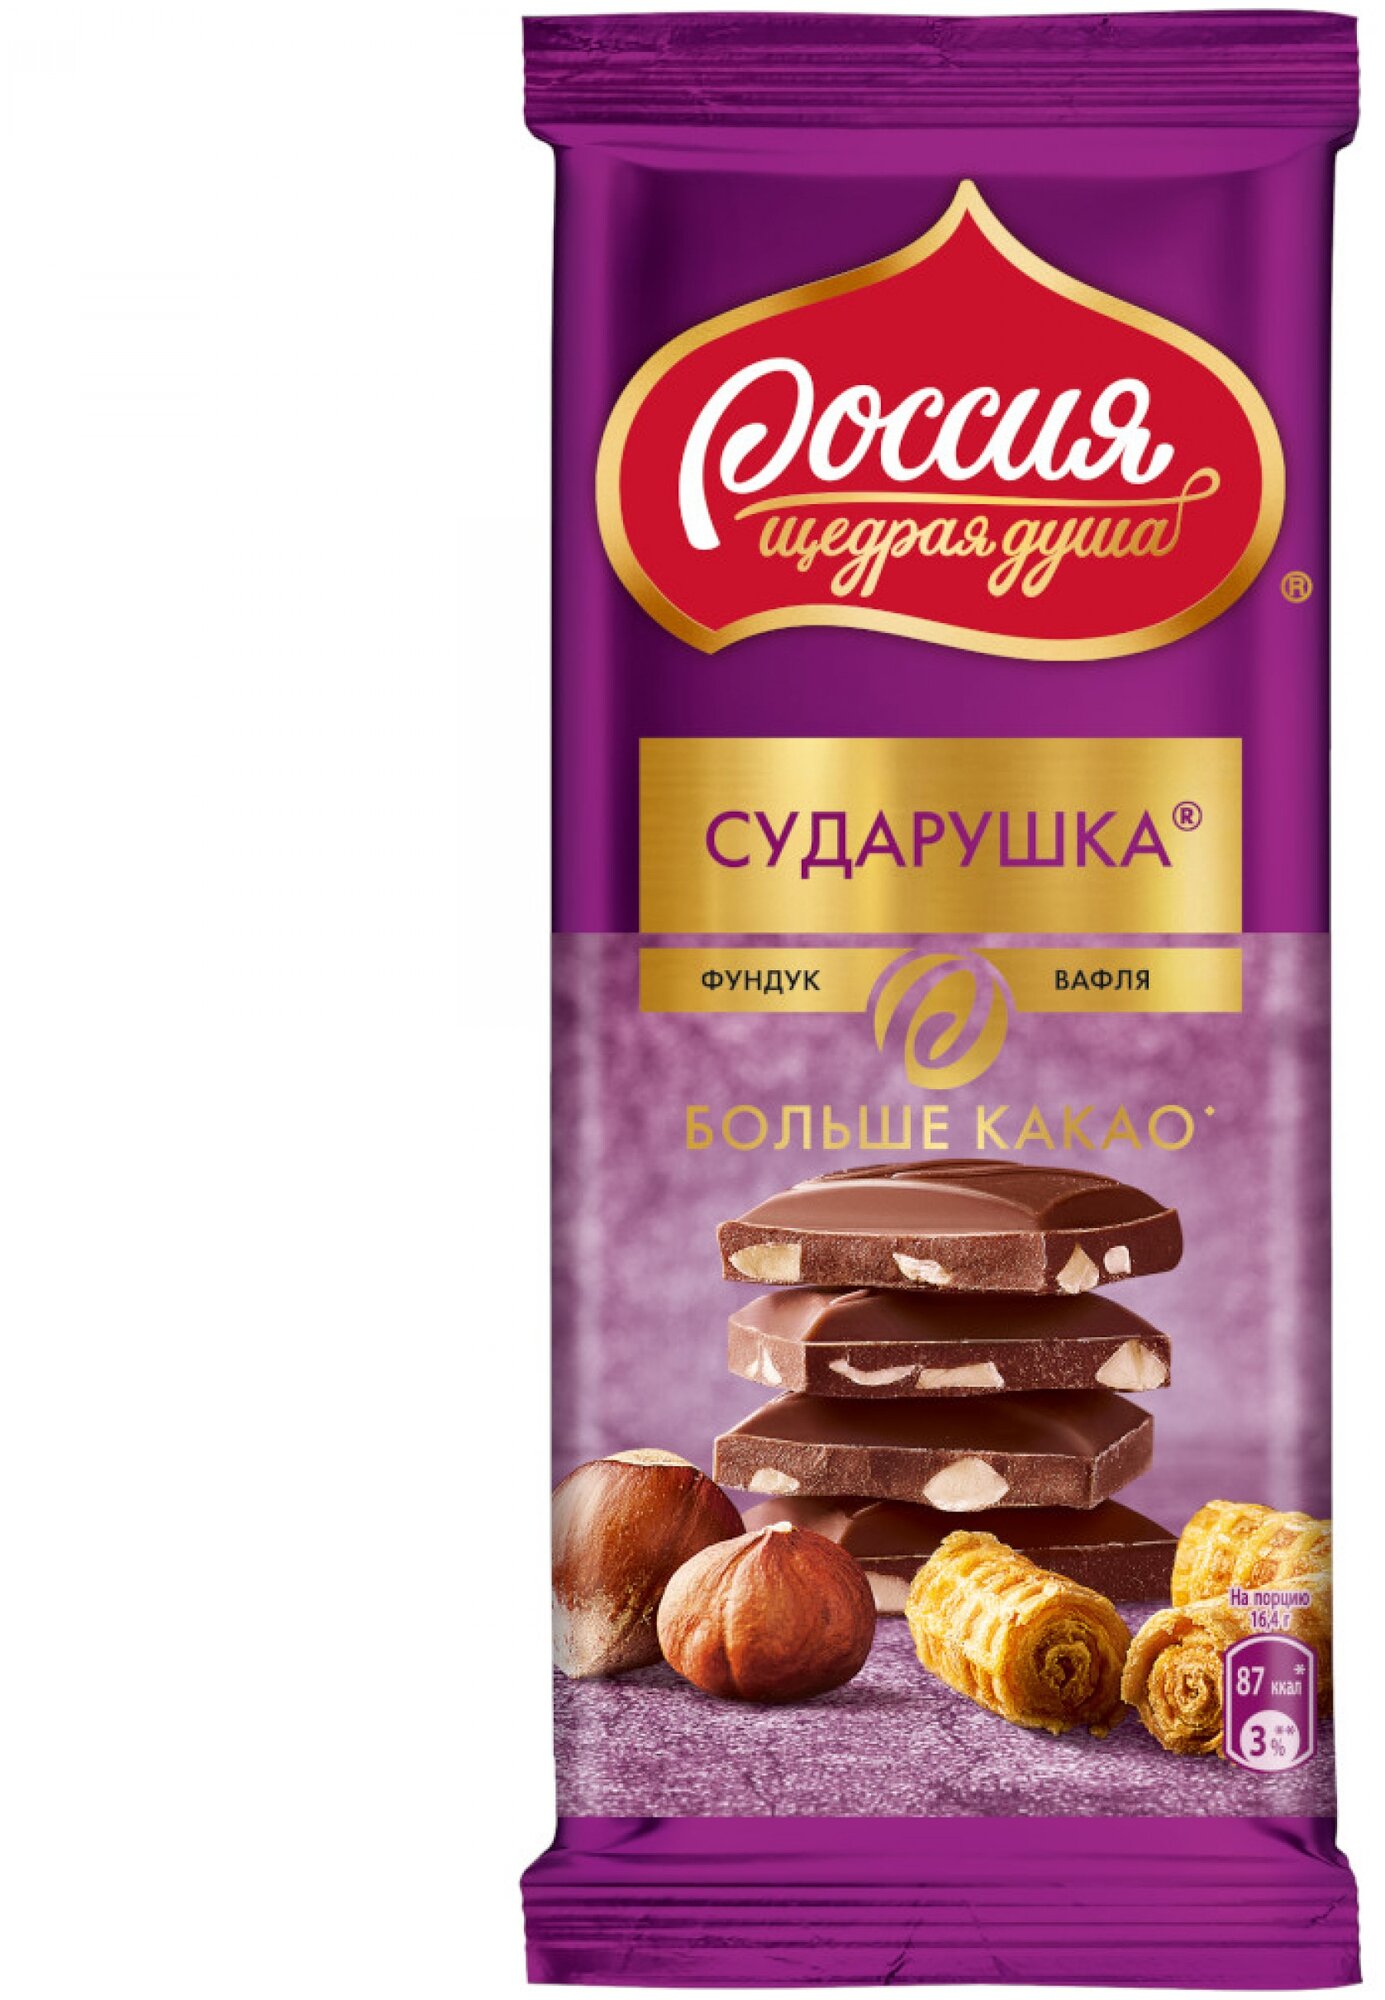 Шоколад Россия - Щедрая душа! Сударушка Молочный с фундуком и вафлей